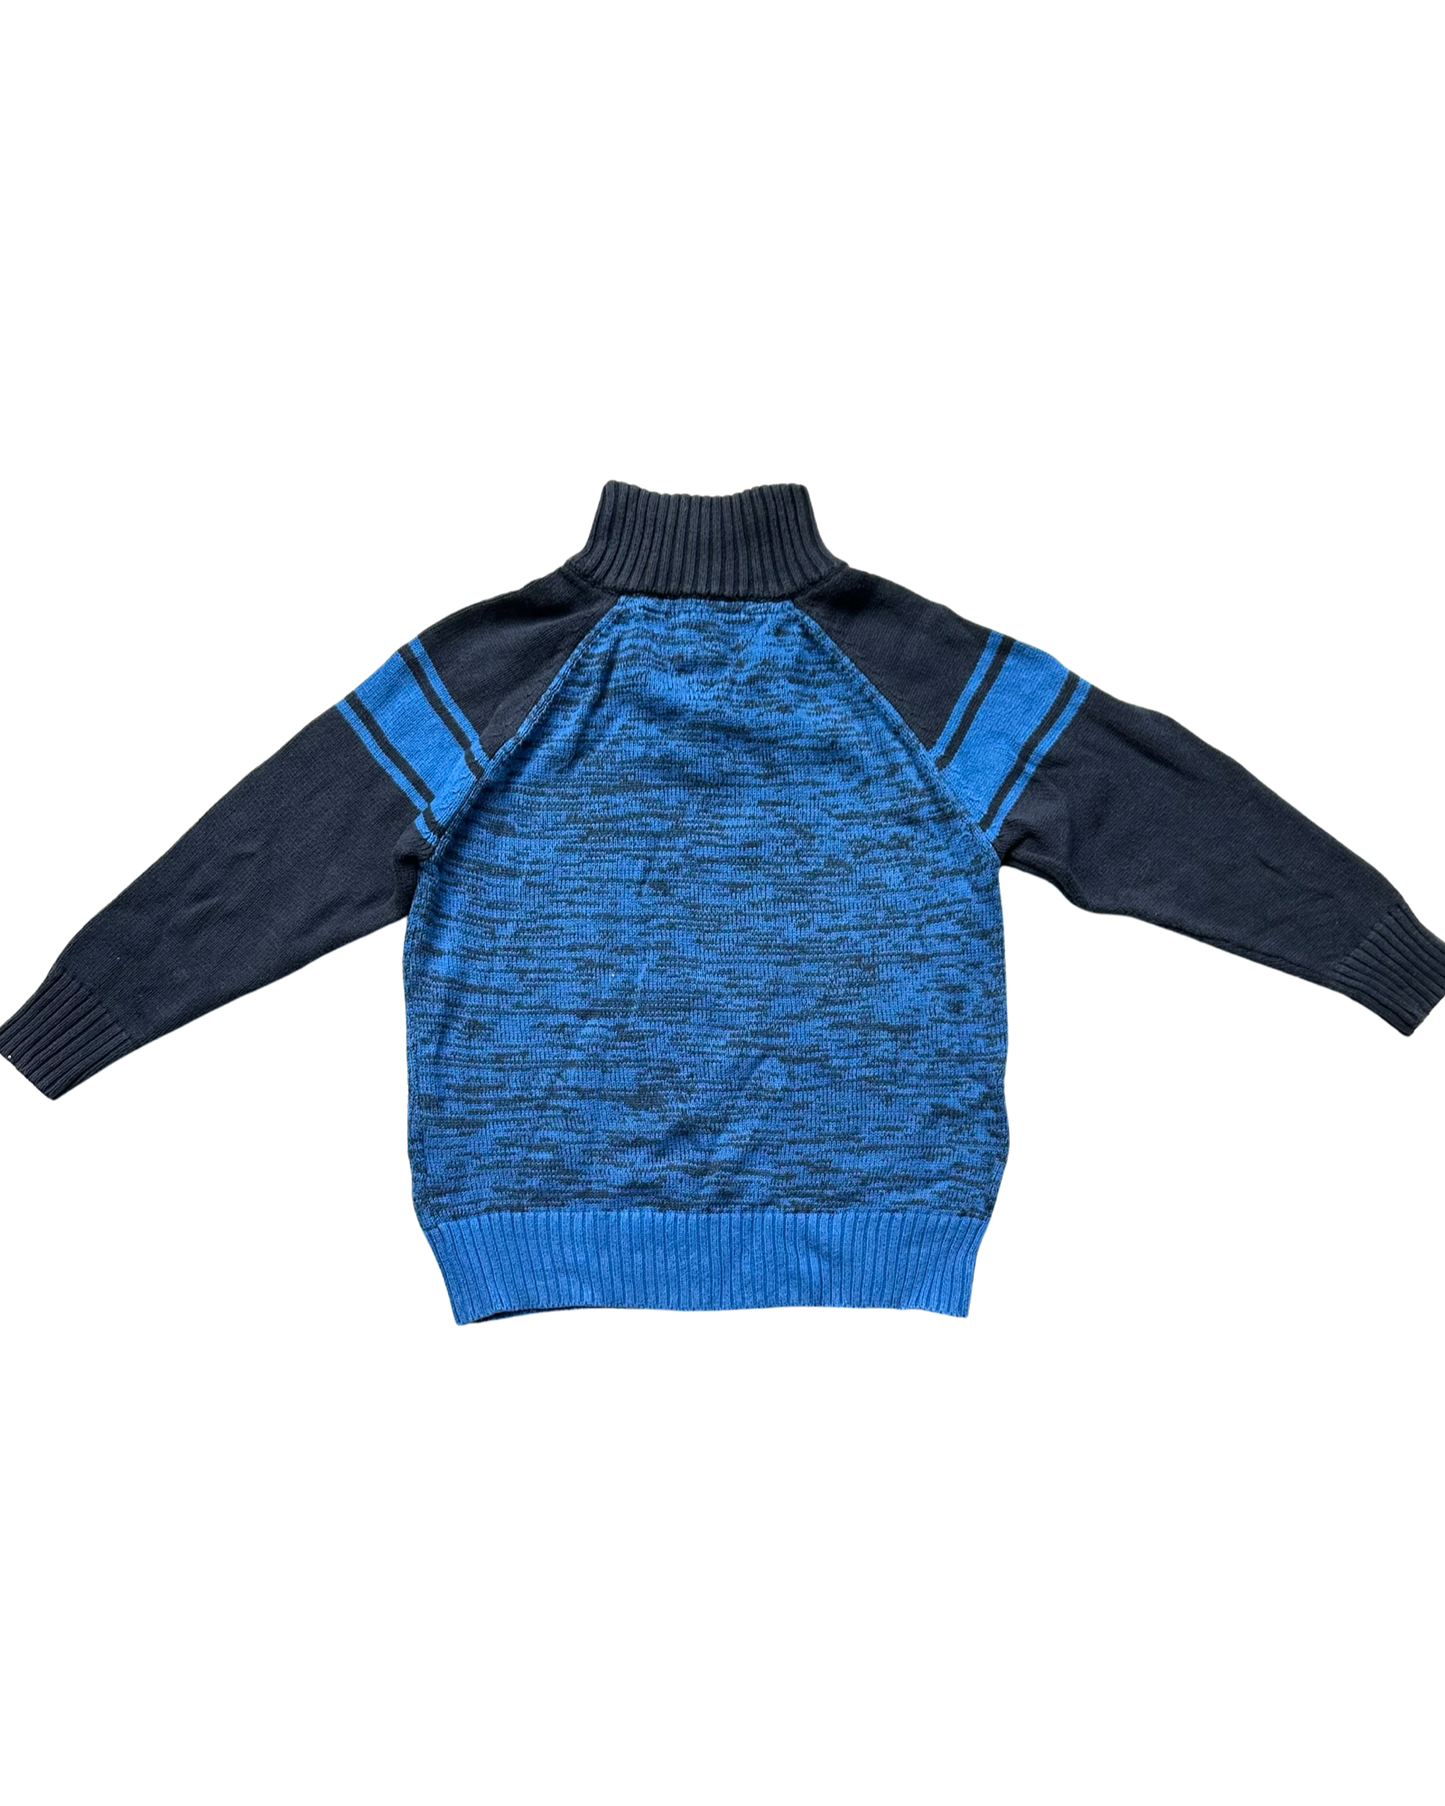 Vintage Tommy Hilfiger blue mix 1/4 zip knit jumper (4-5yrs)